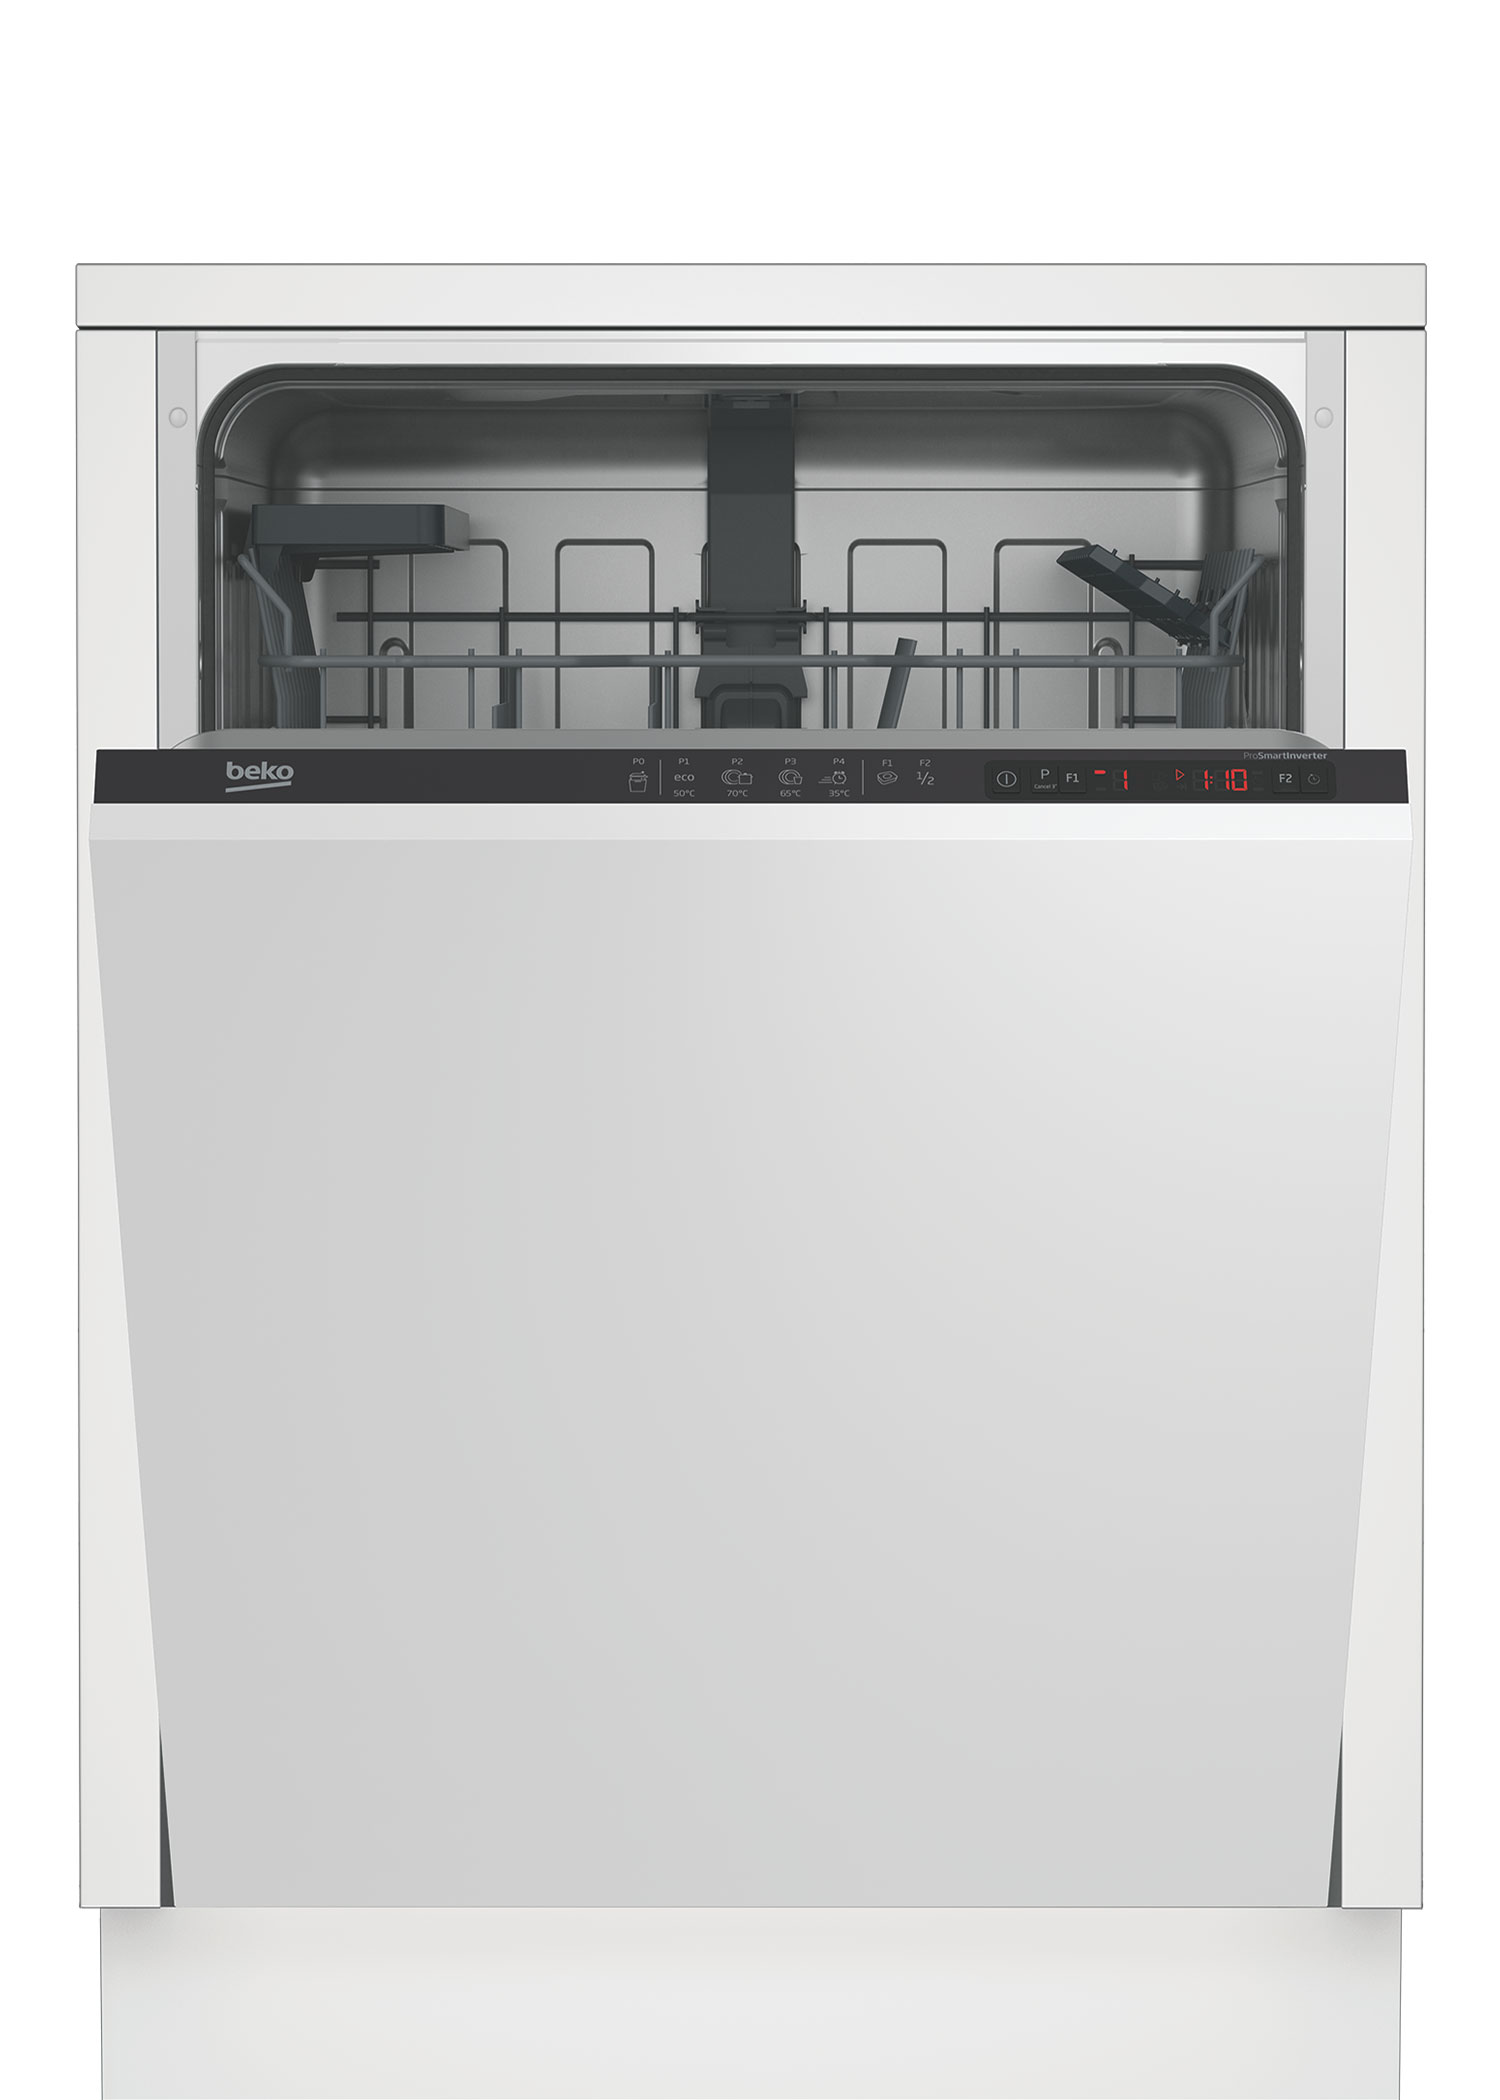 Встраиваемая посудомоечная машина Beko DIN24310 встраиваемая посудомоечная машина beko bdin16520